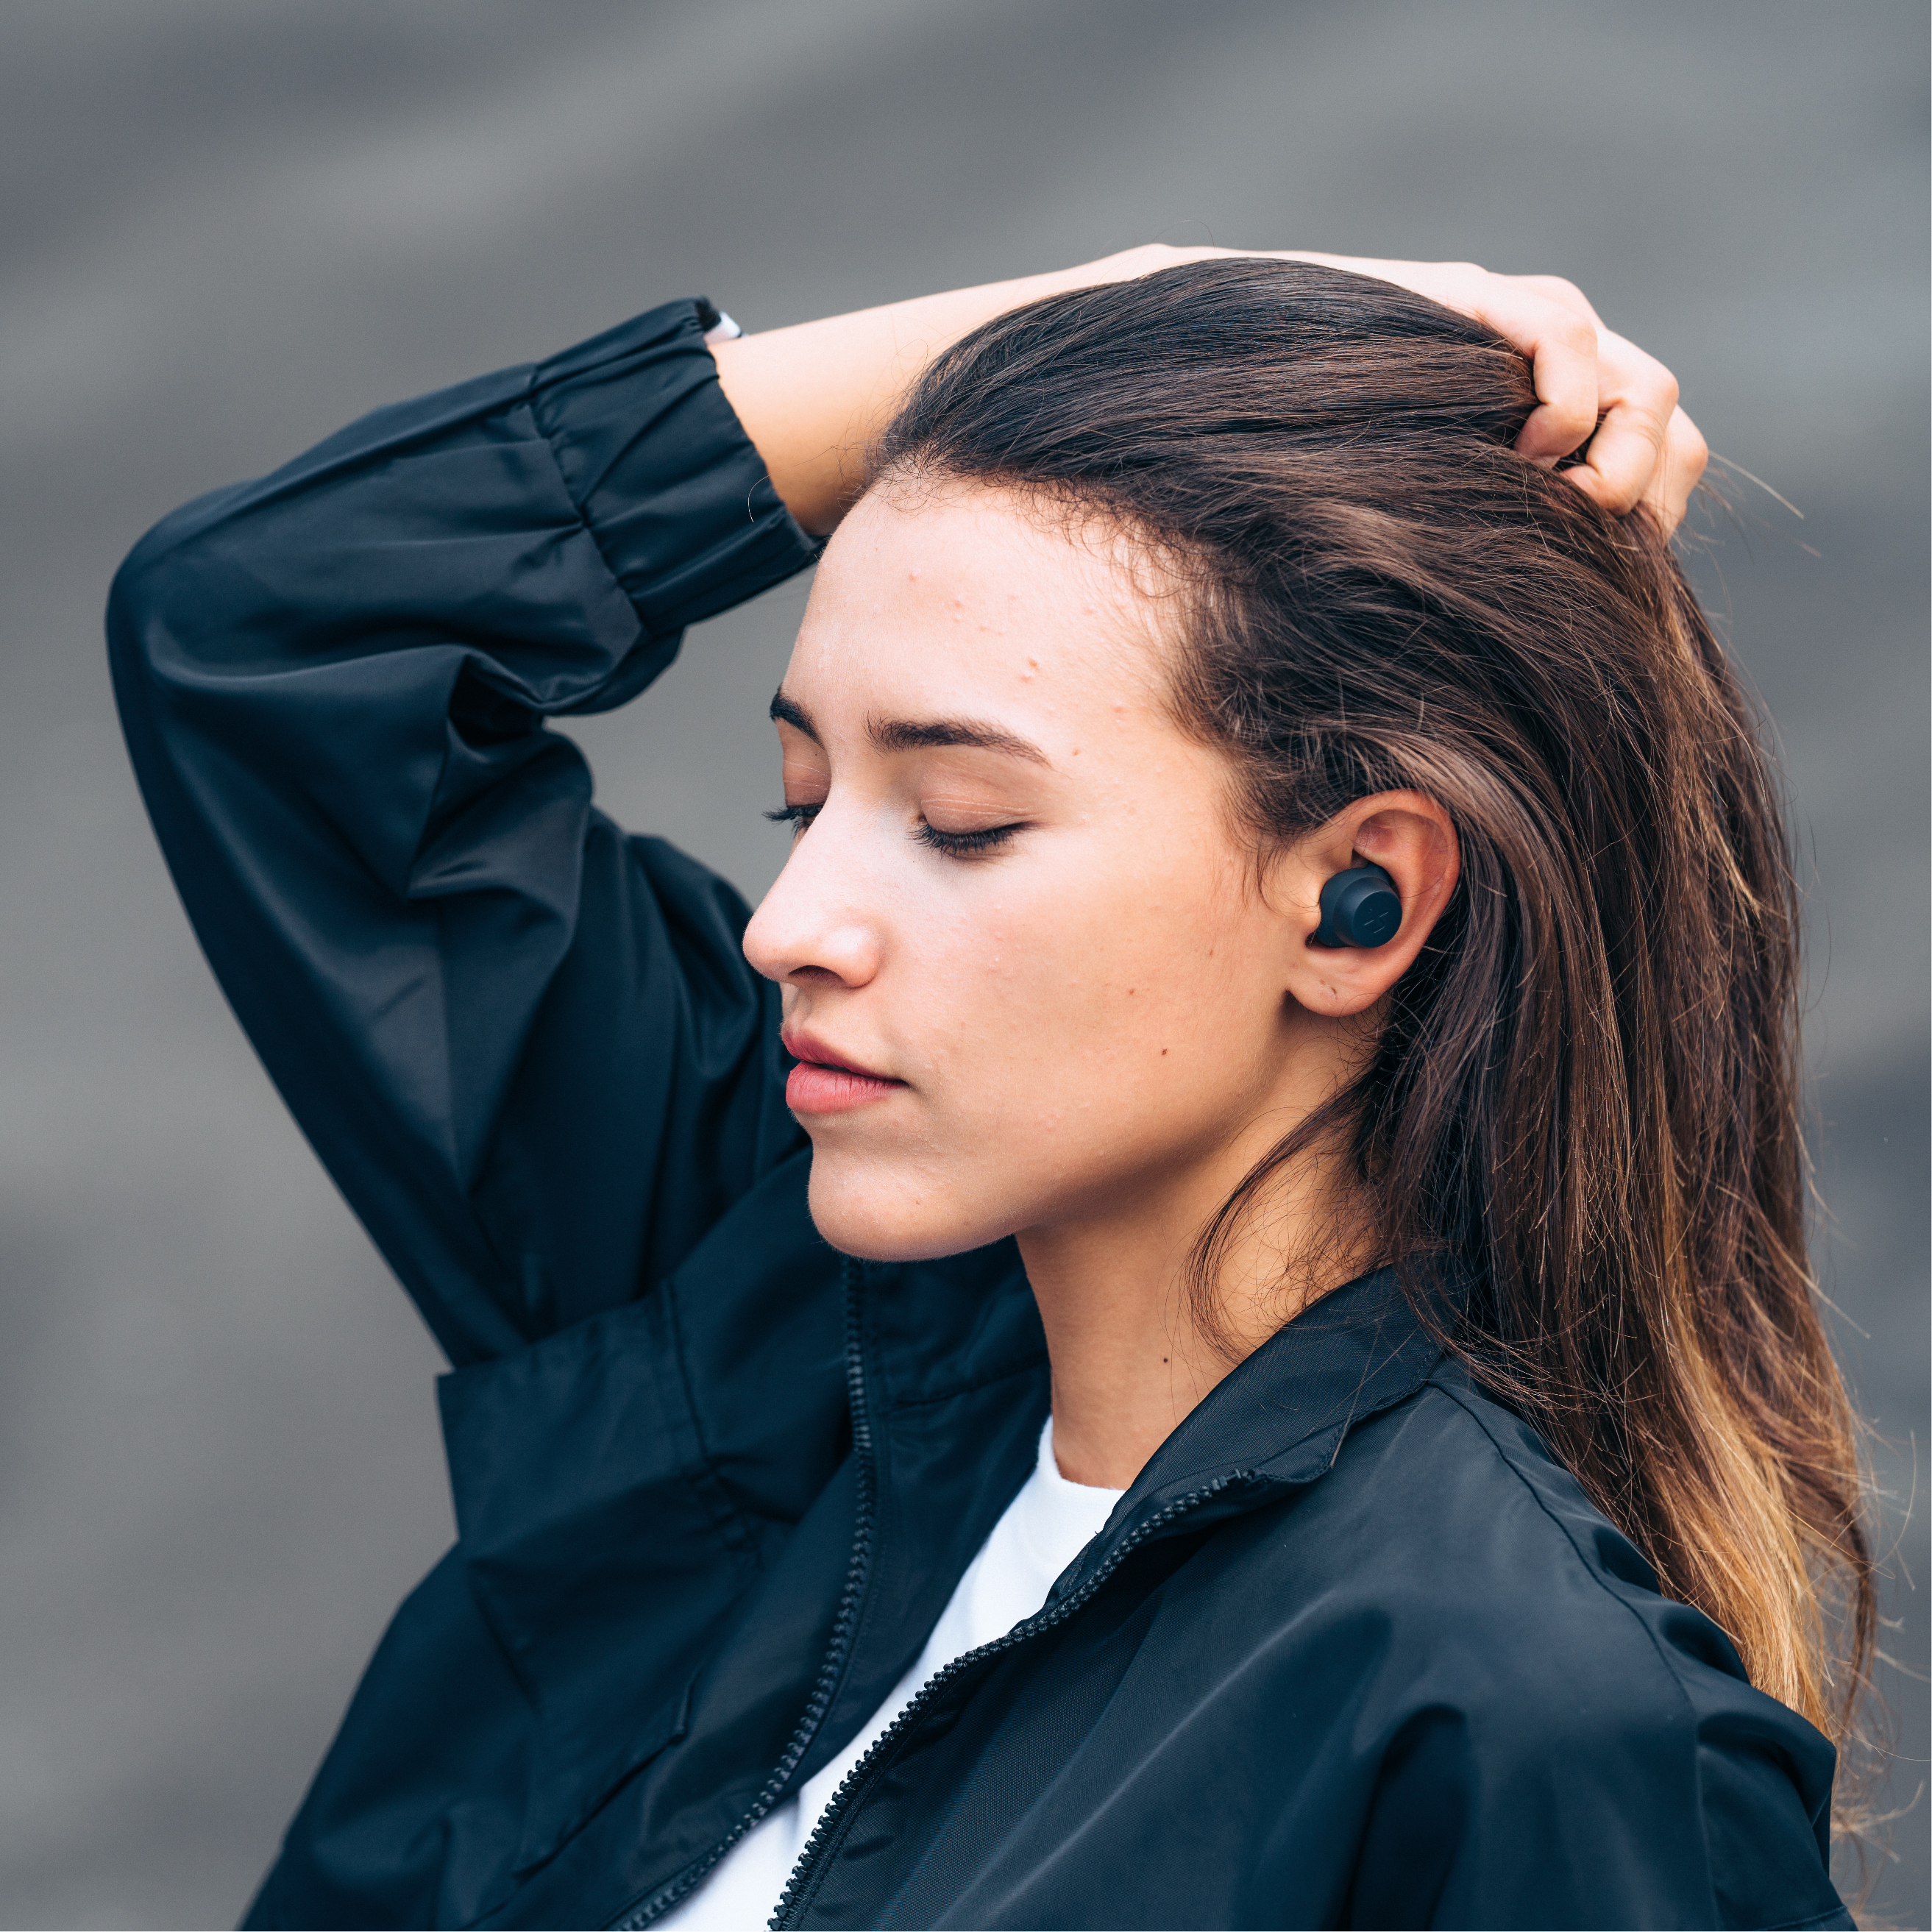 说要给你一个“听不完的青春”，魅族发布便携式头戴耳机 HD50 | 理想生活实验室 - 为更理想的生活